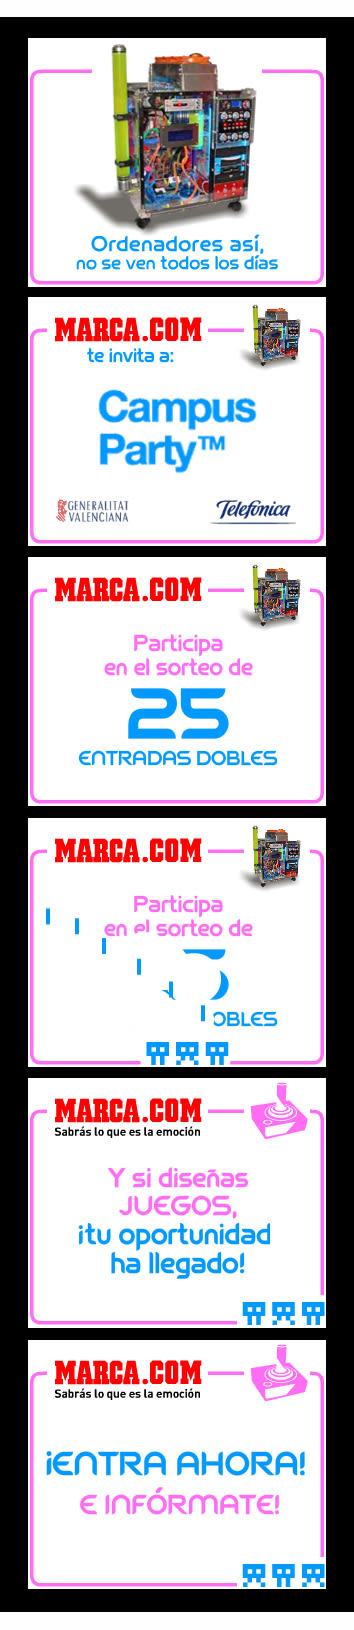 MARCA.com 3